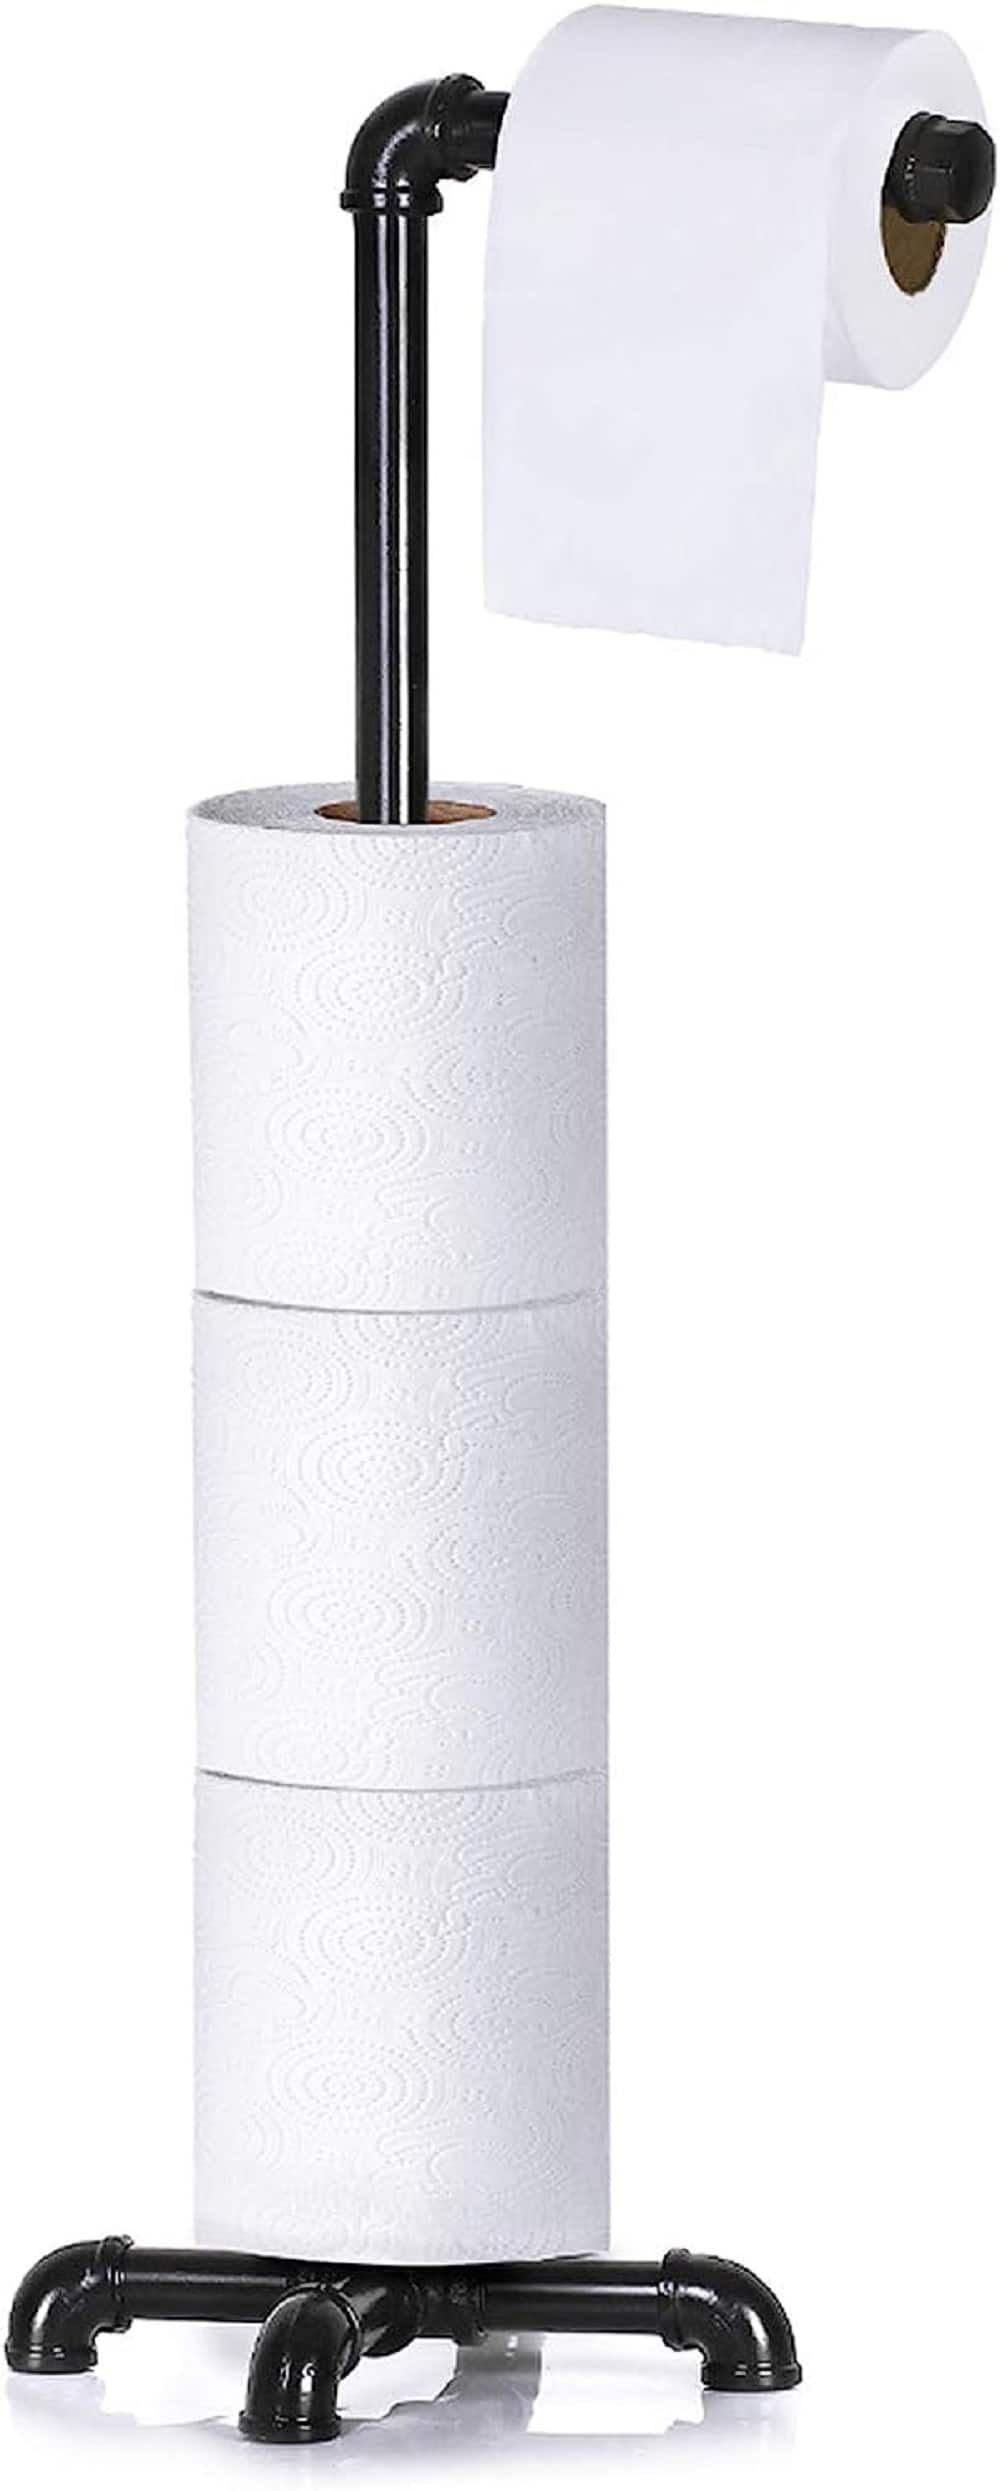  Toilet Paper Holder, Free Standing Toilet Paper Holder